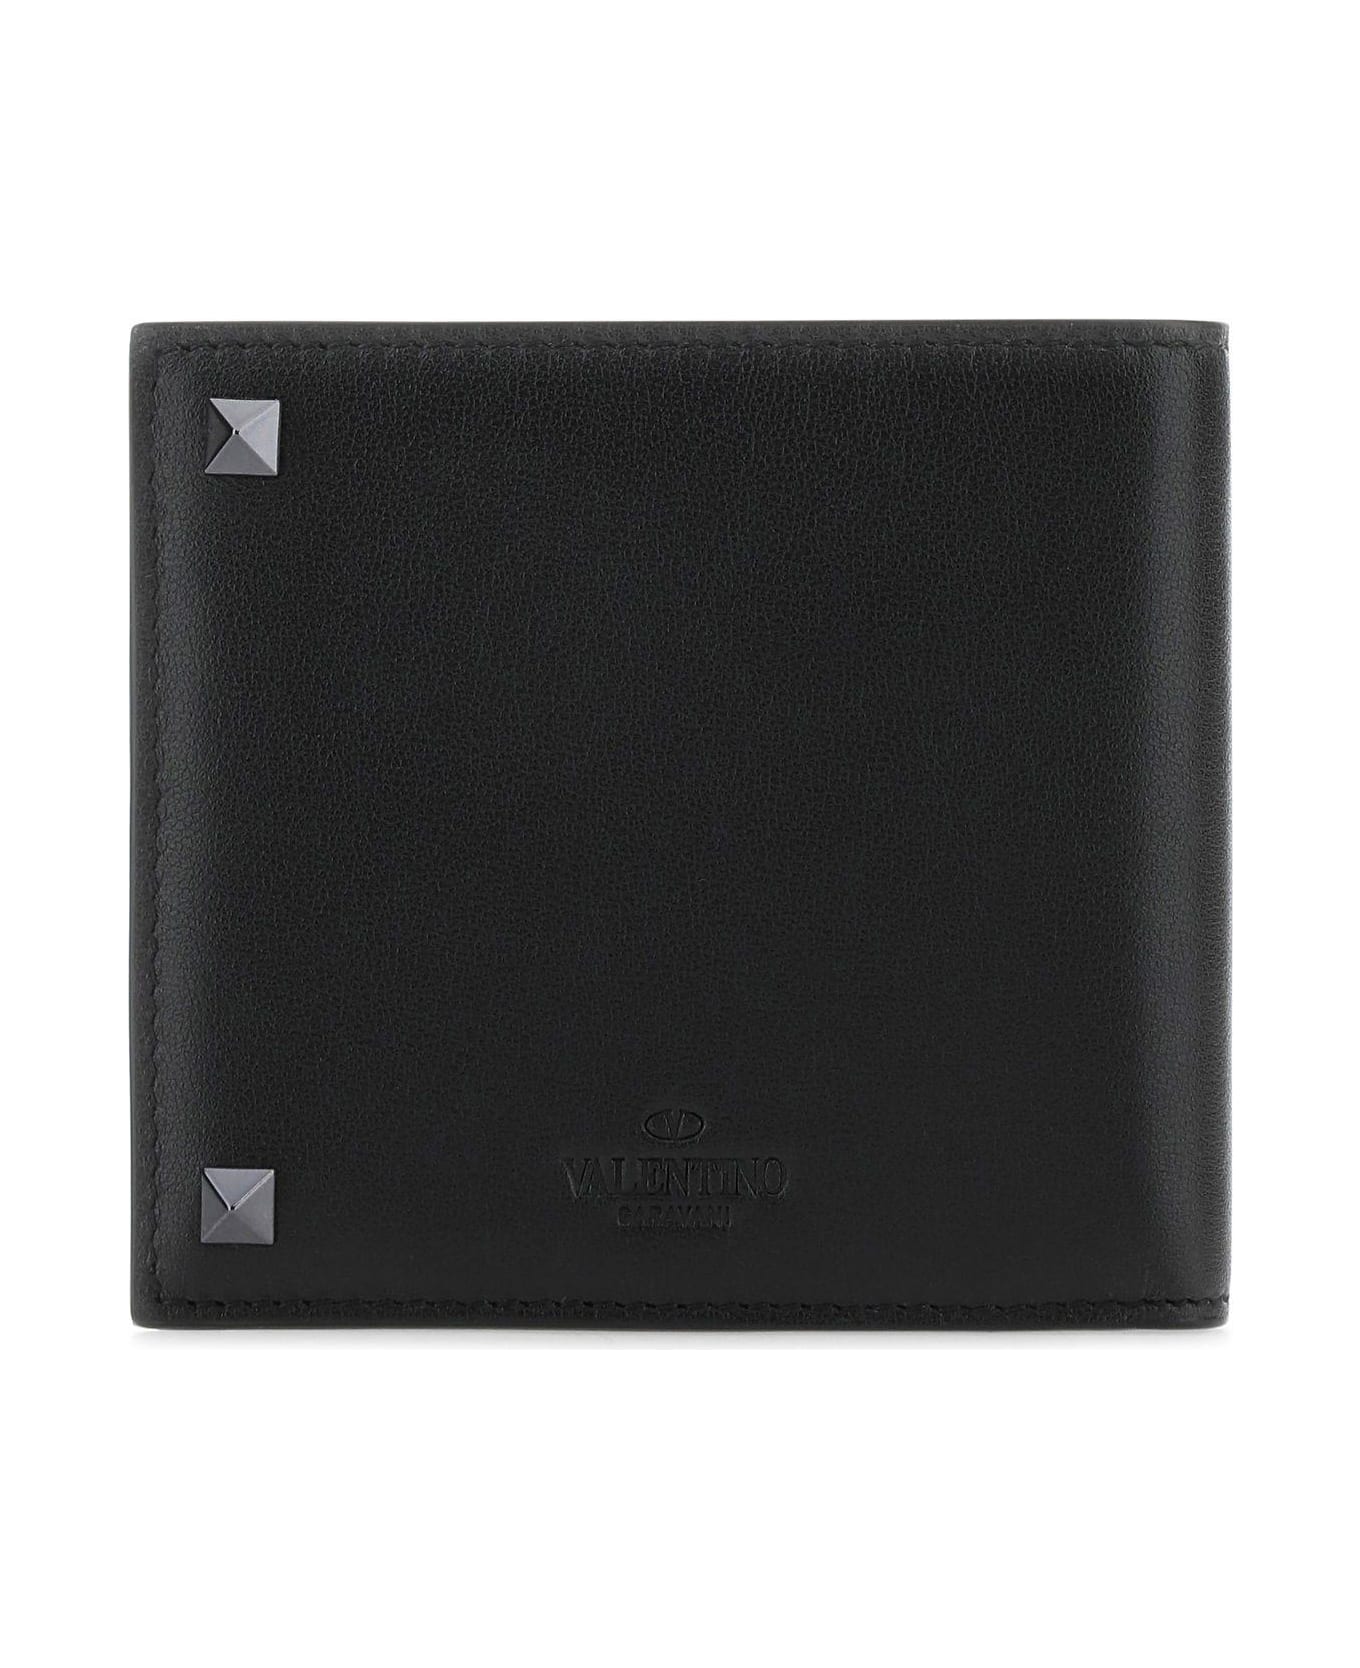 Valentino Garavani Rockstud Calfskin Wallet - Black